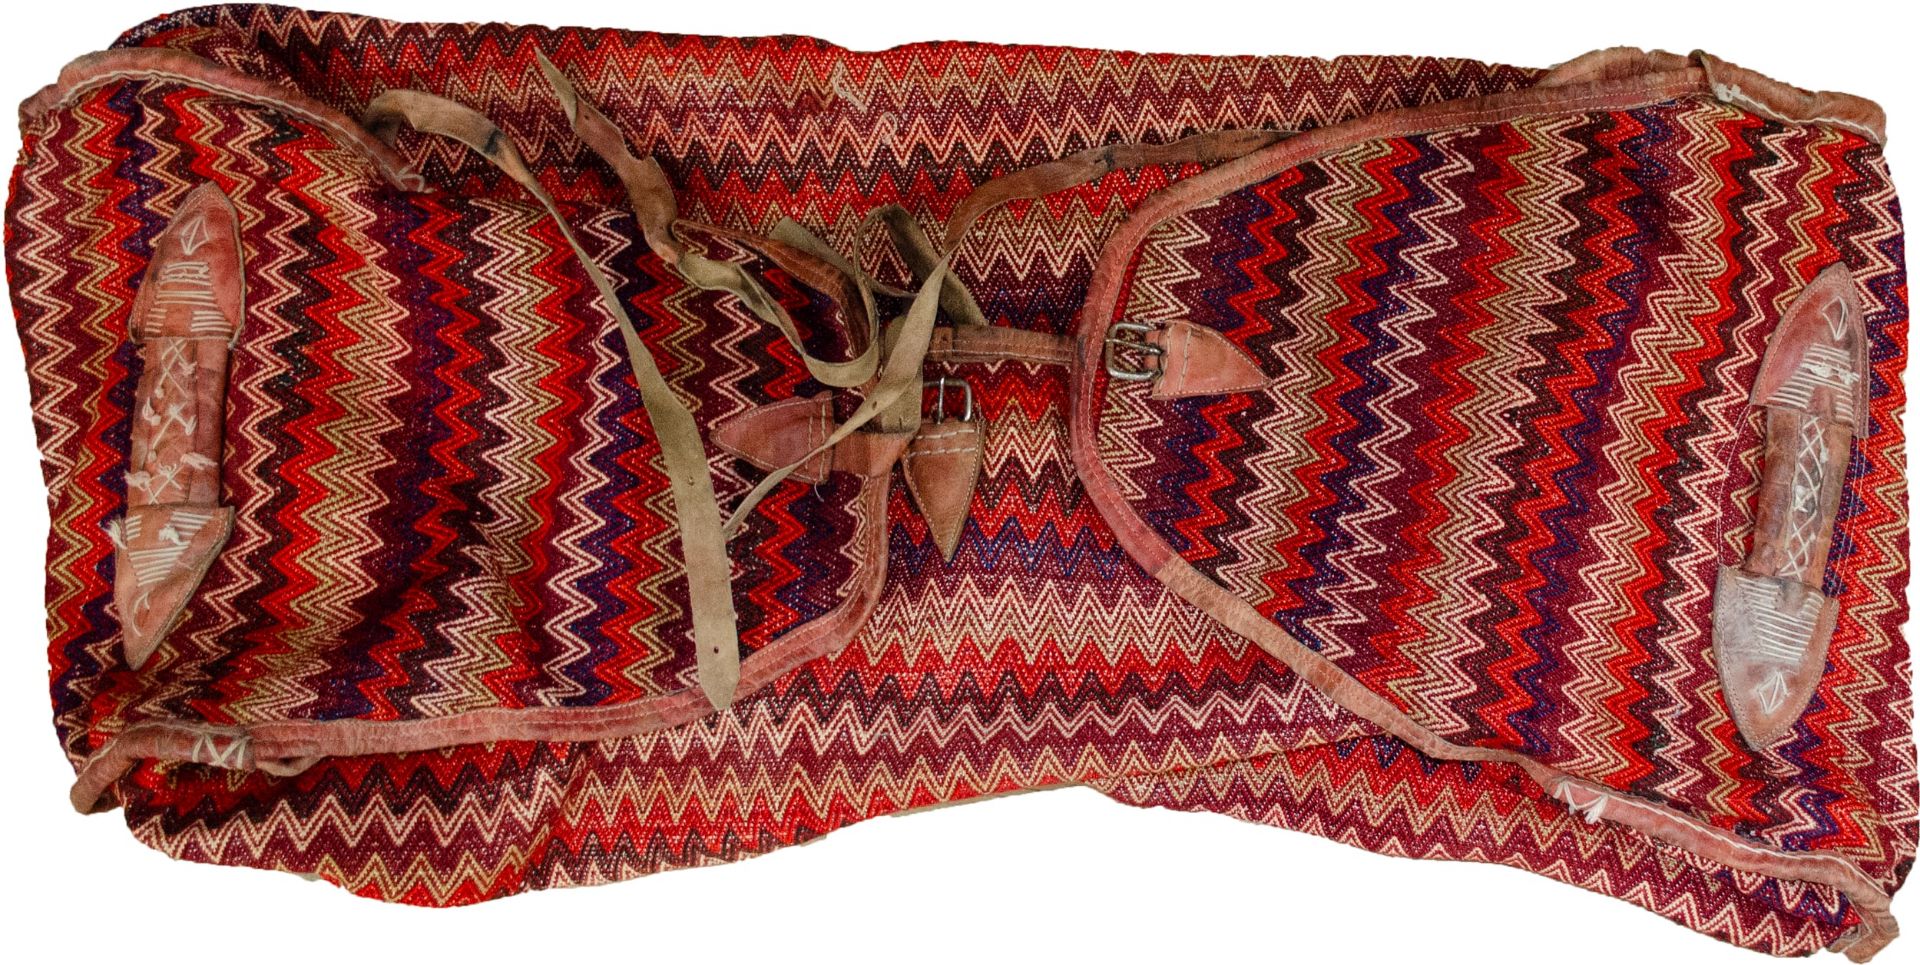 A Qashqai bedding bag, circa 1950